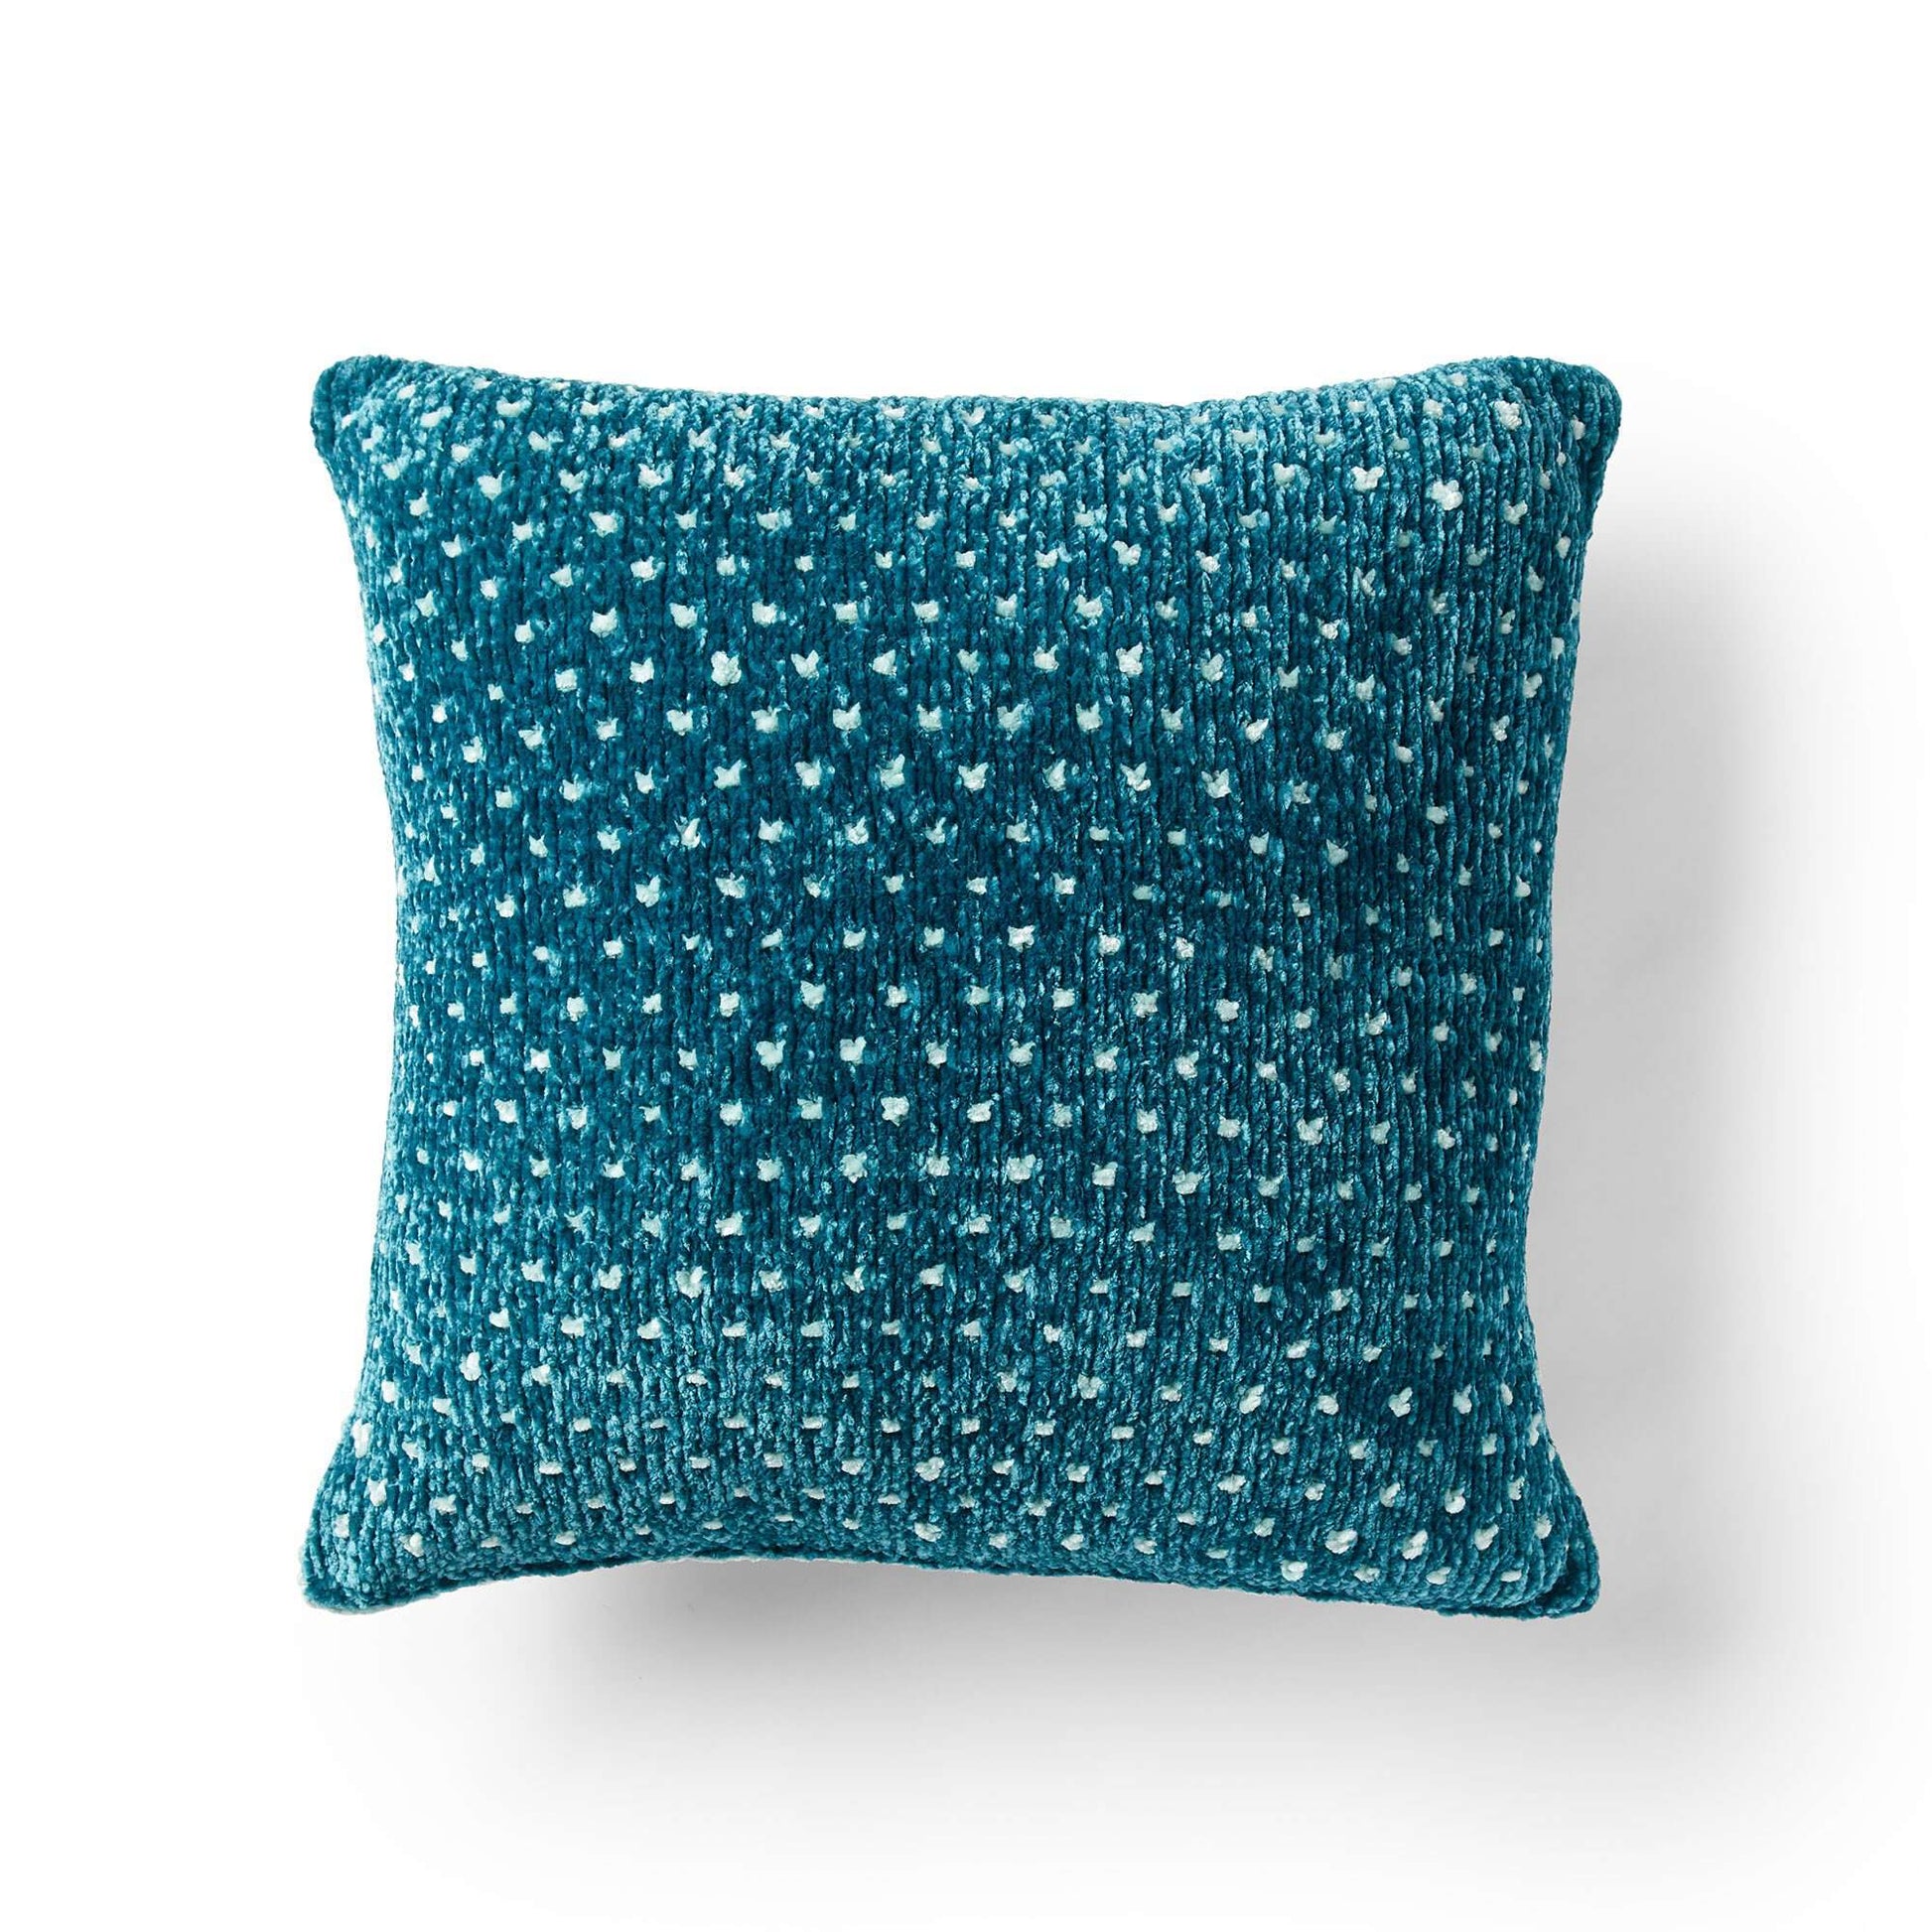 Free Bernat Pretty Polka-Dot Knit Pillow Pattern